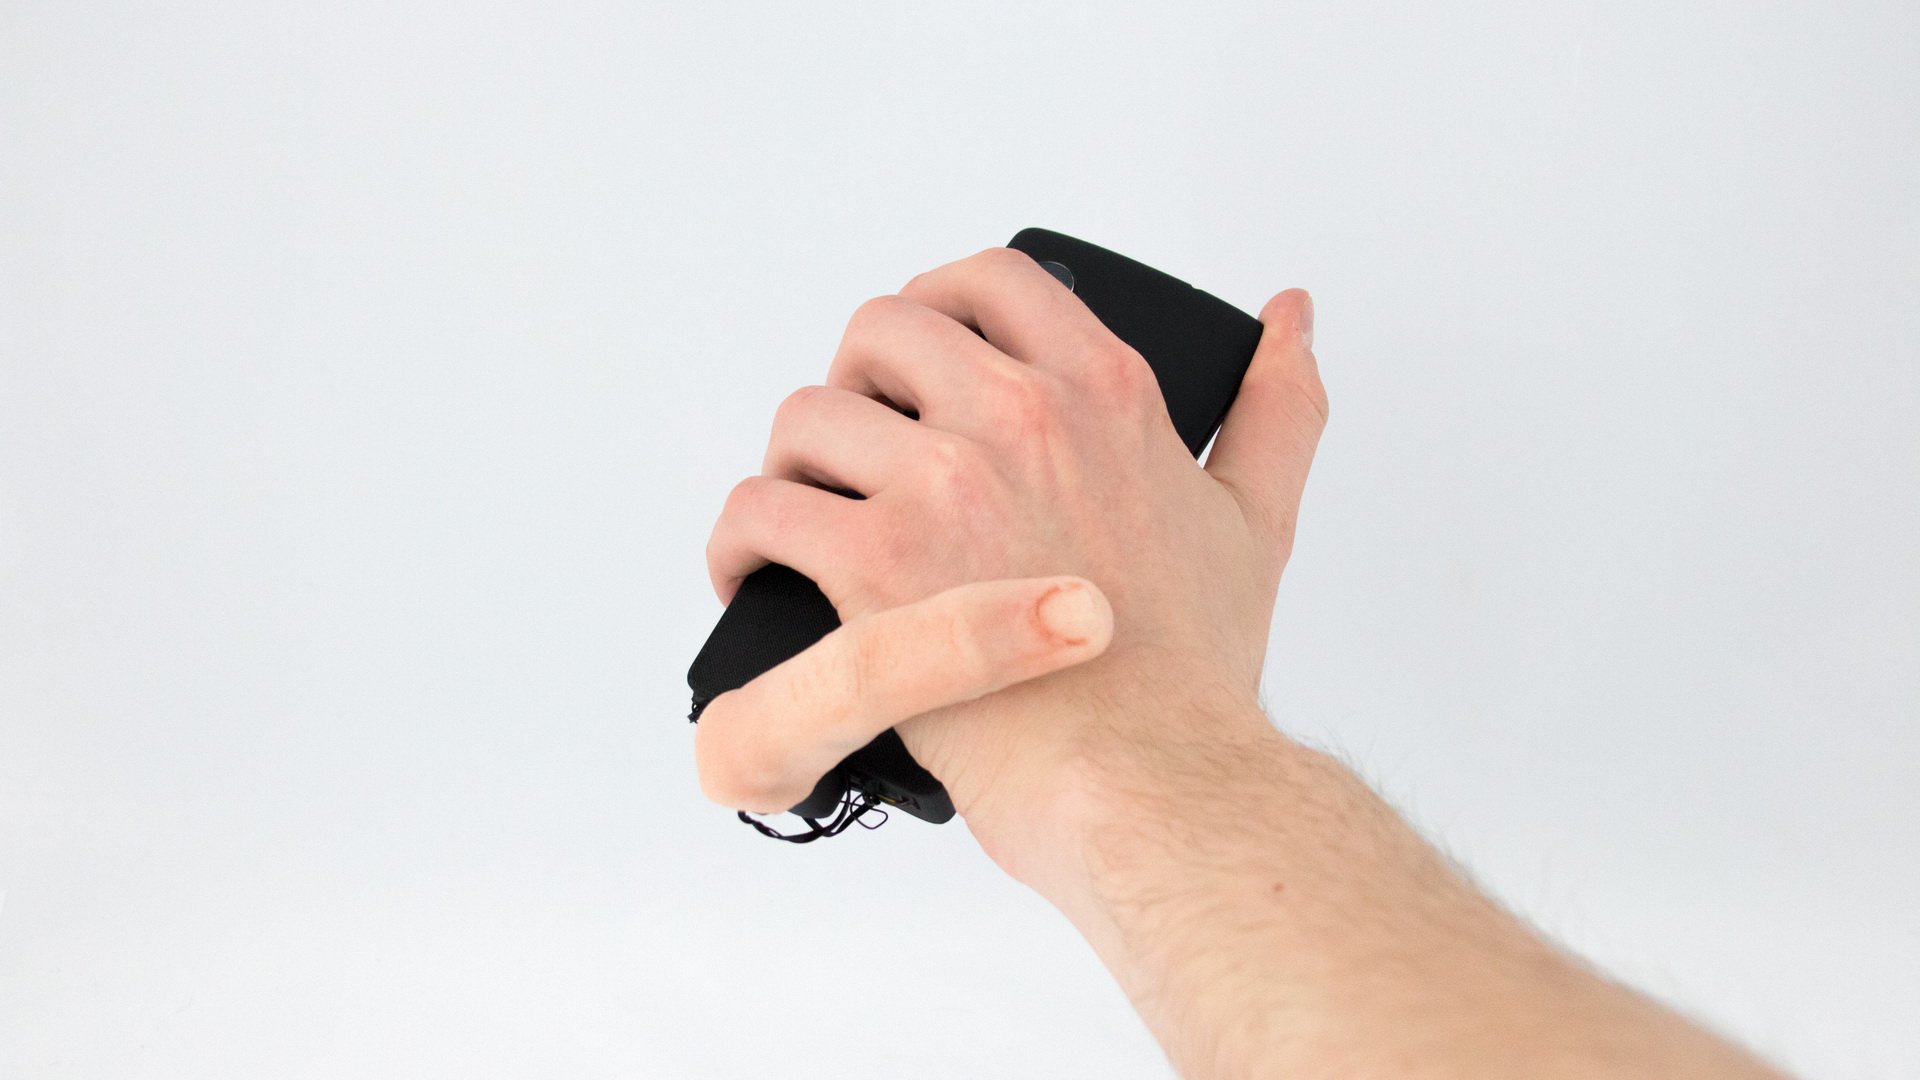 Robotic palec zwiększy swoją opinię z twoim smartfonem